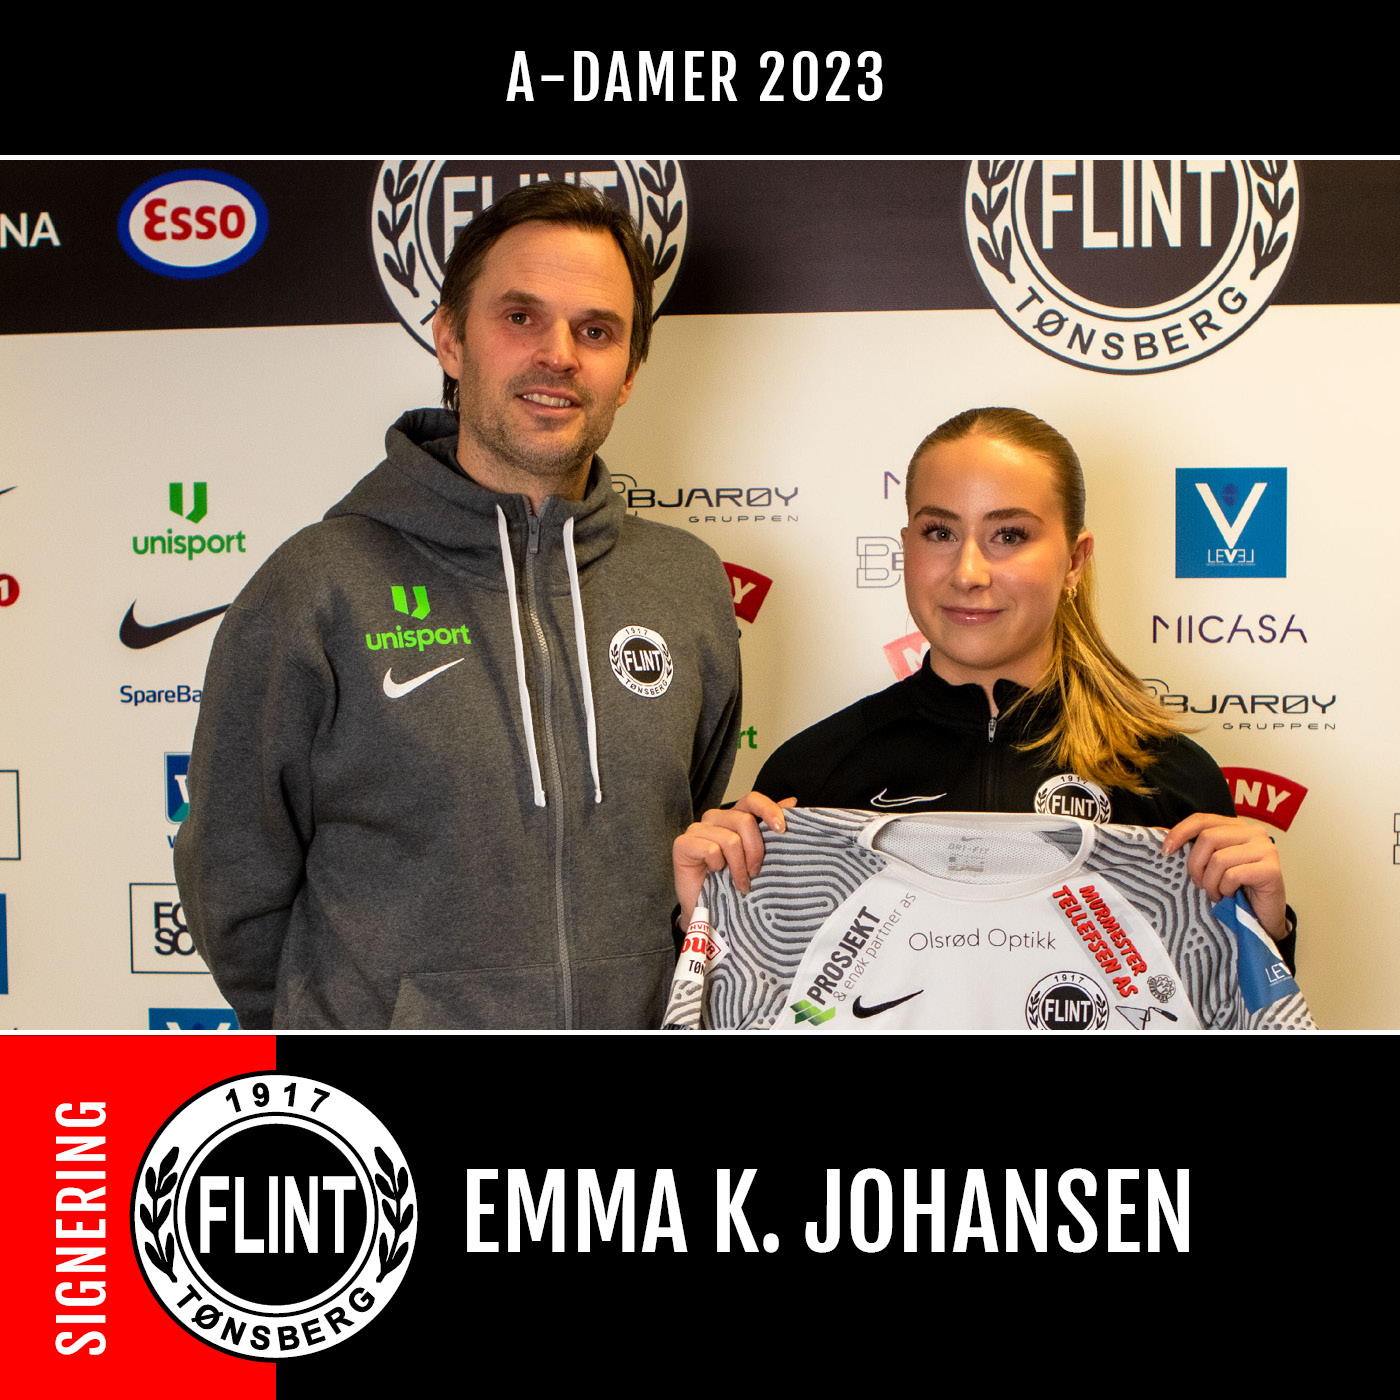 https://www.flintfotball.no/wp-content/uploads/2023/01/Emma-K-Johansen.jpg